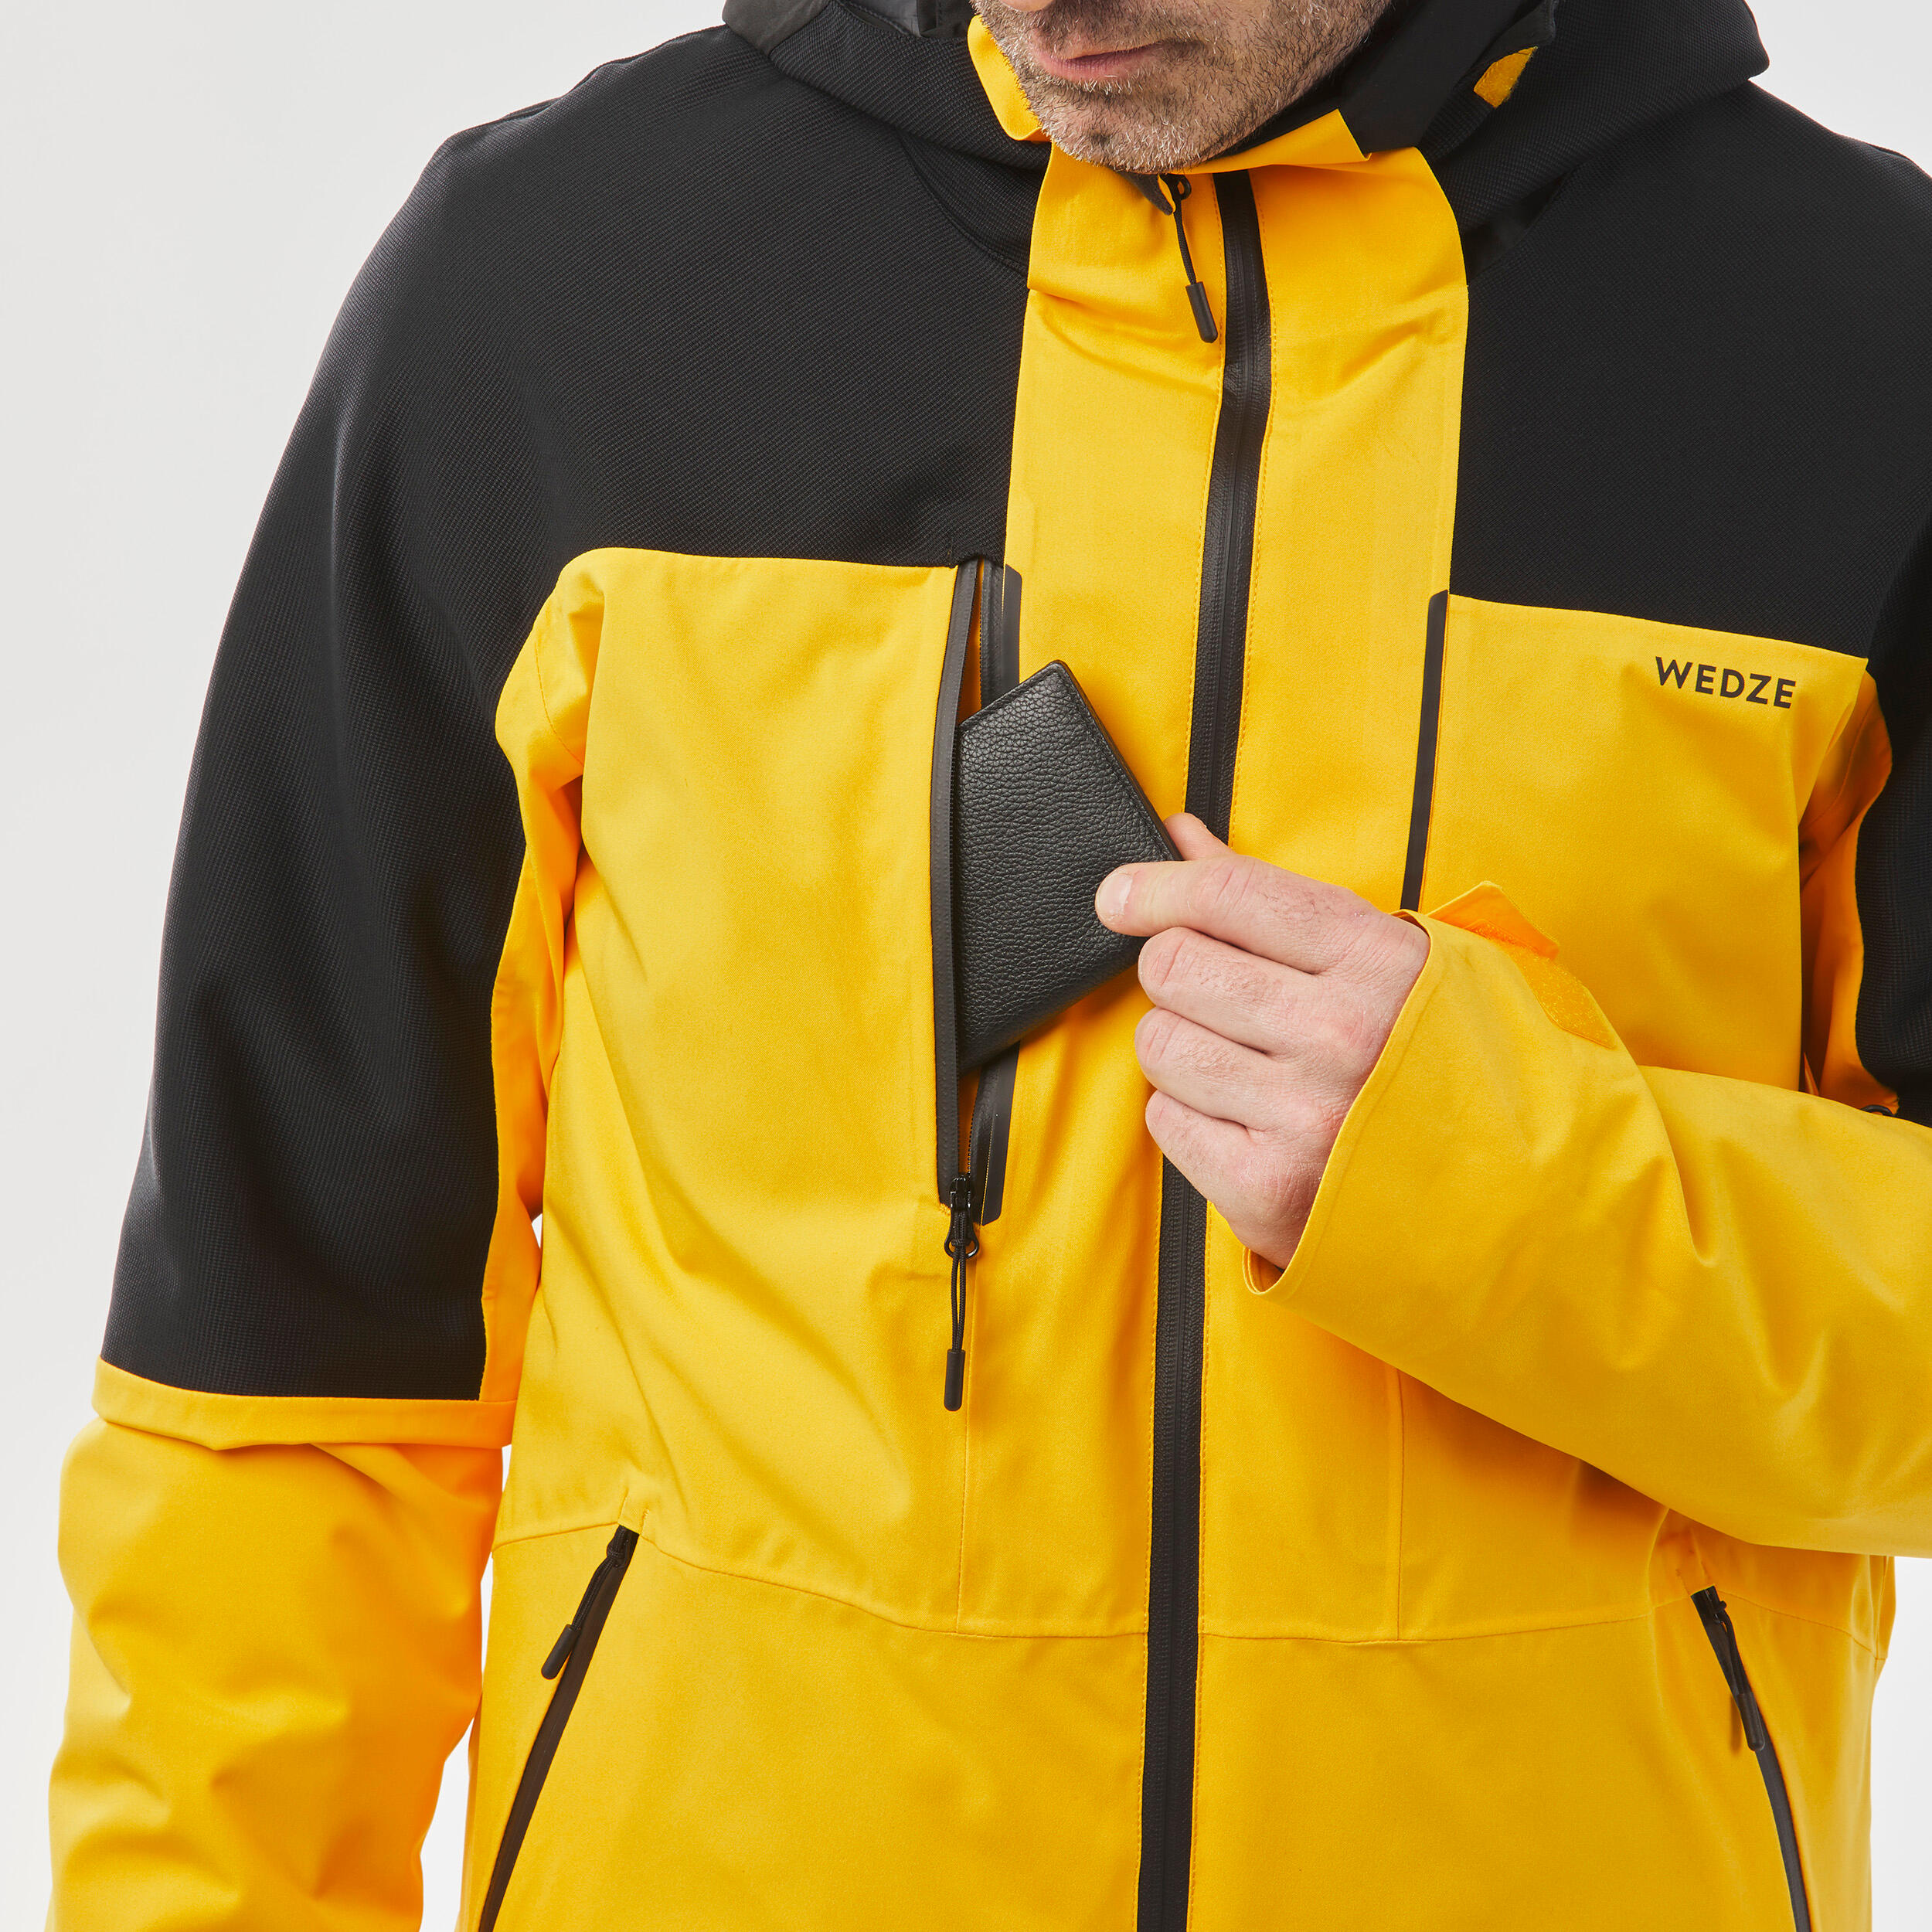 Men's Ski Jacket - 500 SPORT - Yellow/Black WEDZE